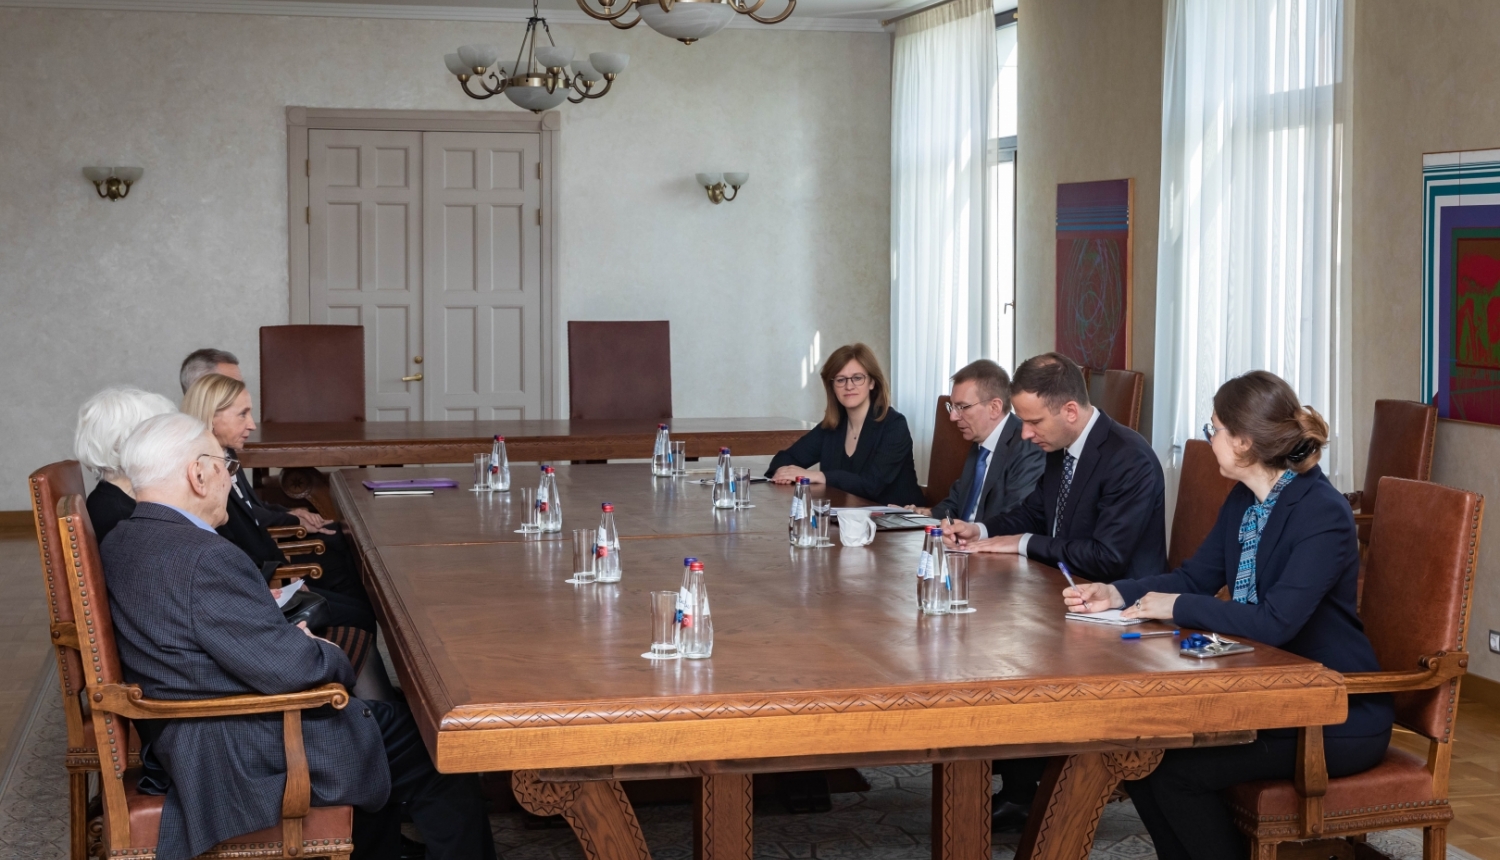 Ārlietu ministrs ar Latvijas Okupācijas muzeja pārstāvjiem pārrunā Latvijas vēstures pētniecības jautājumus